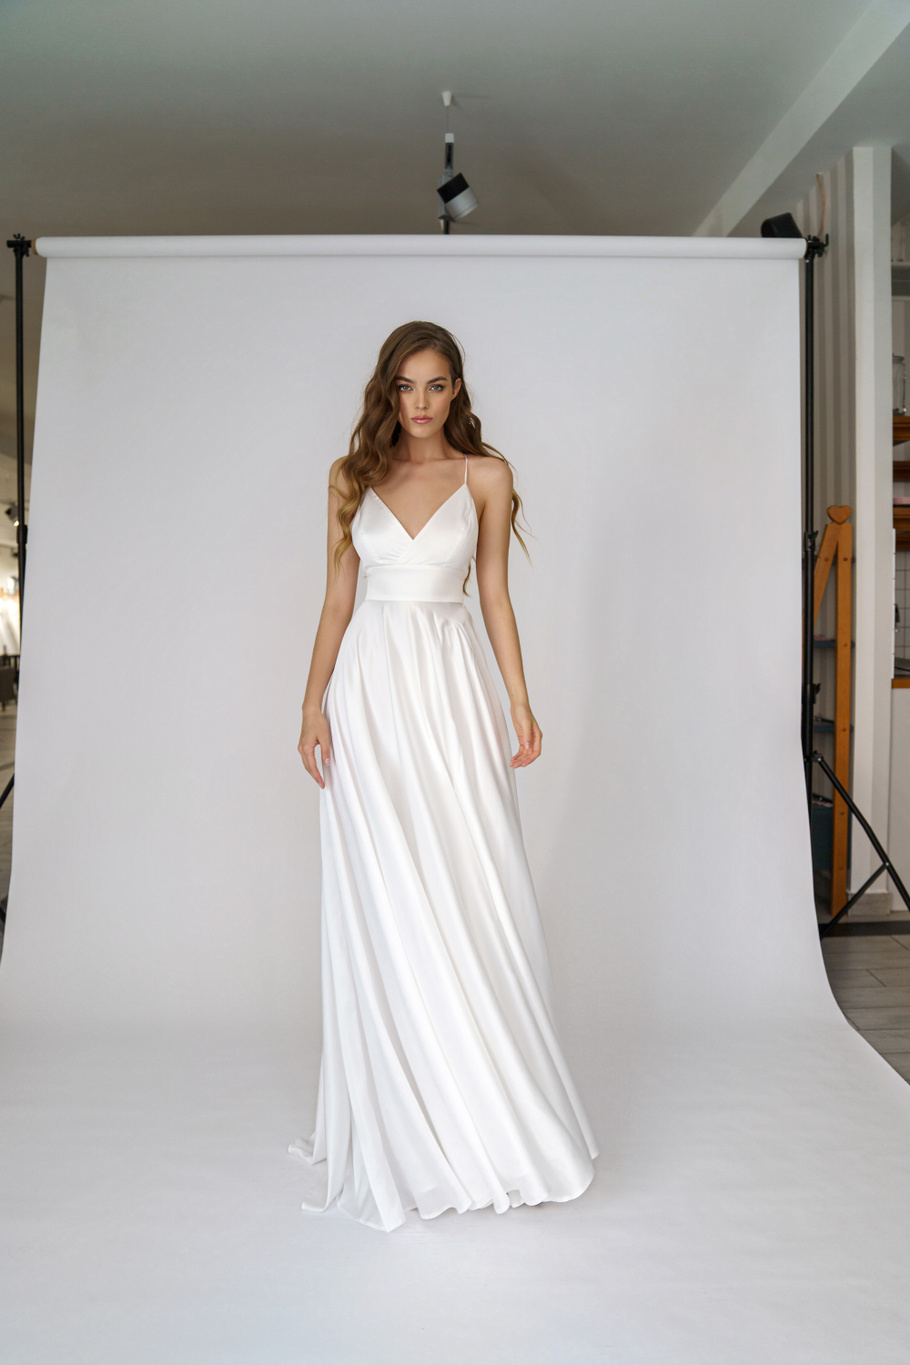 Свадебное платье «Онити» Марта — купить в Ярославле платье Онити из коллекции 2021 года